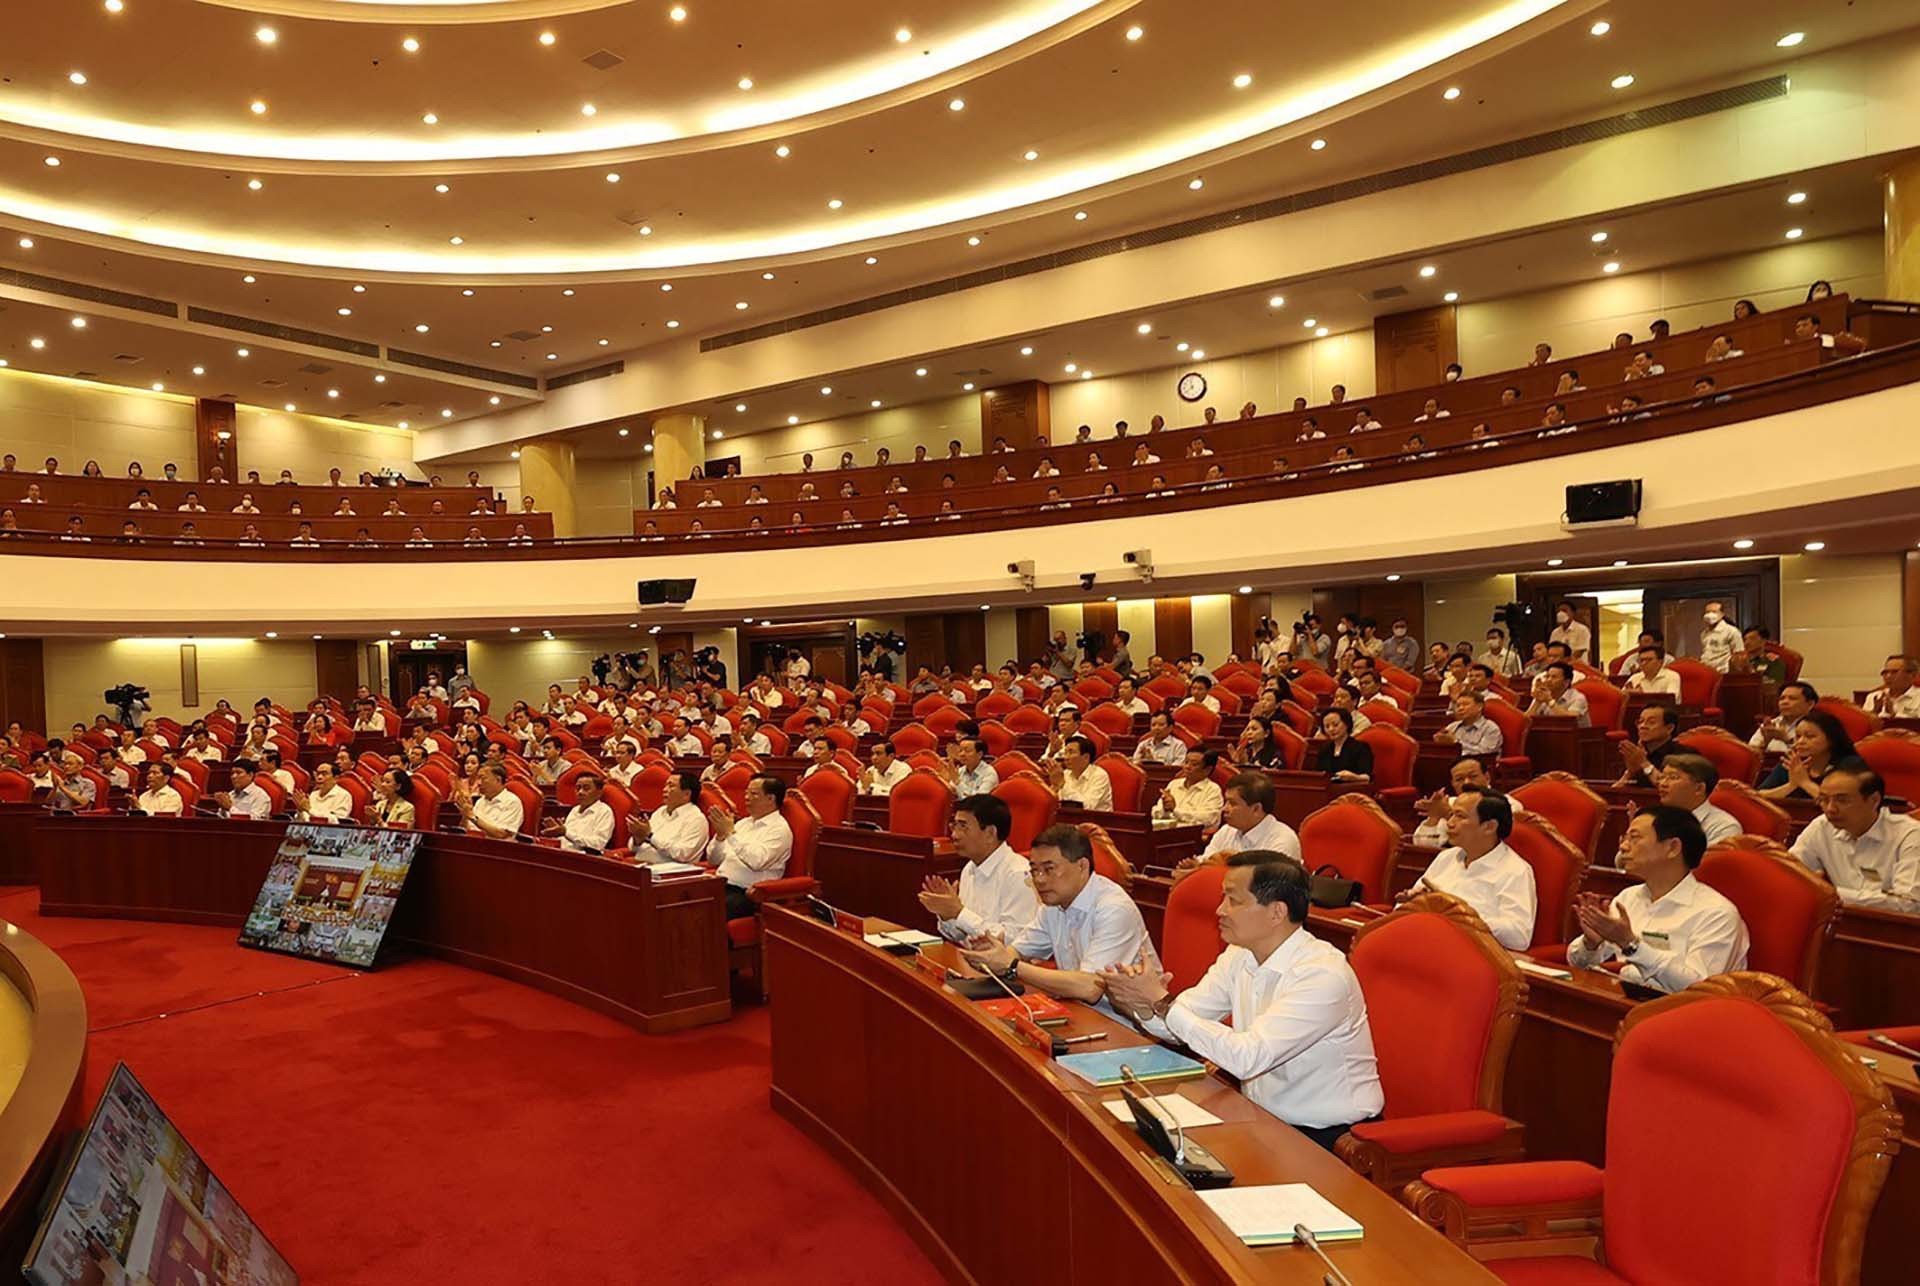 Toàn văn phát biểu của Tổng Bí thư về phòng chống tham nhũng, tiêu cực | Chính trị | Vietnam+ (VietnamPlus)